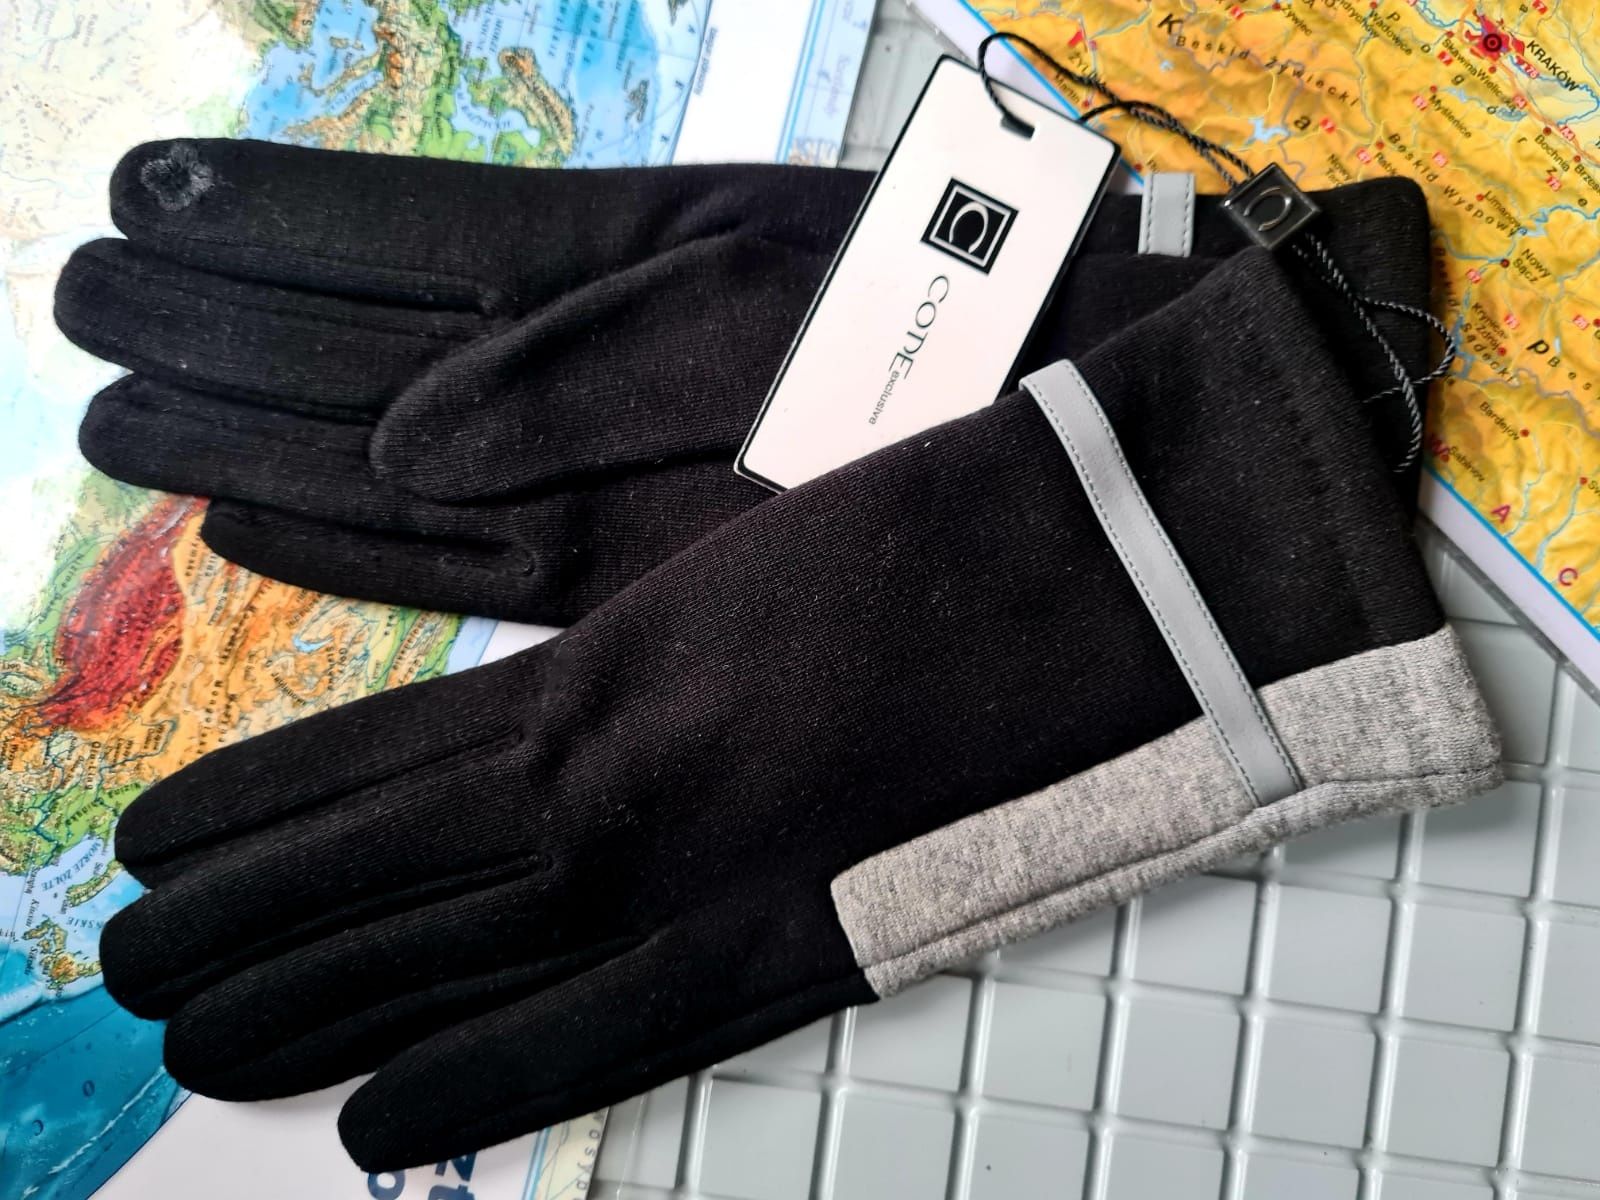 Nowe rękawiczki damskie zimowe ocieplane marki Code czarne